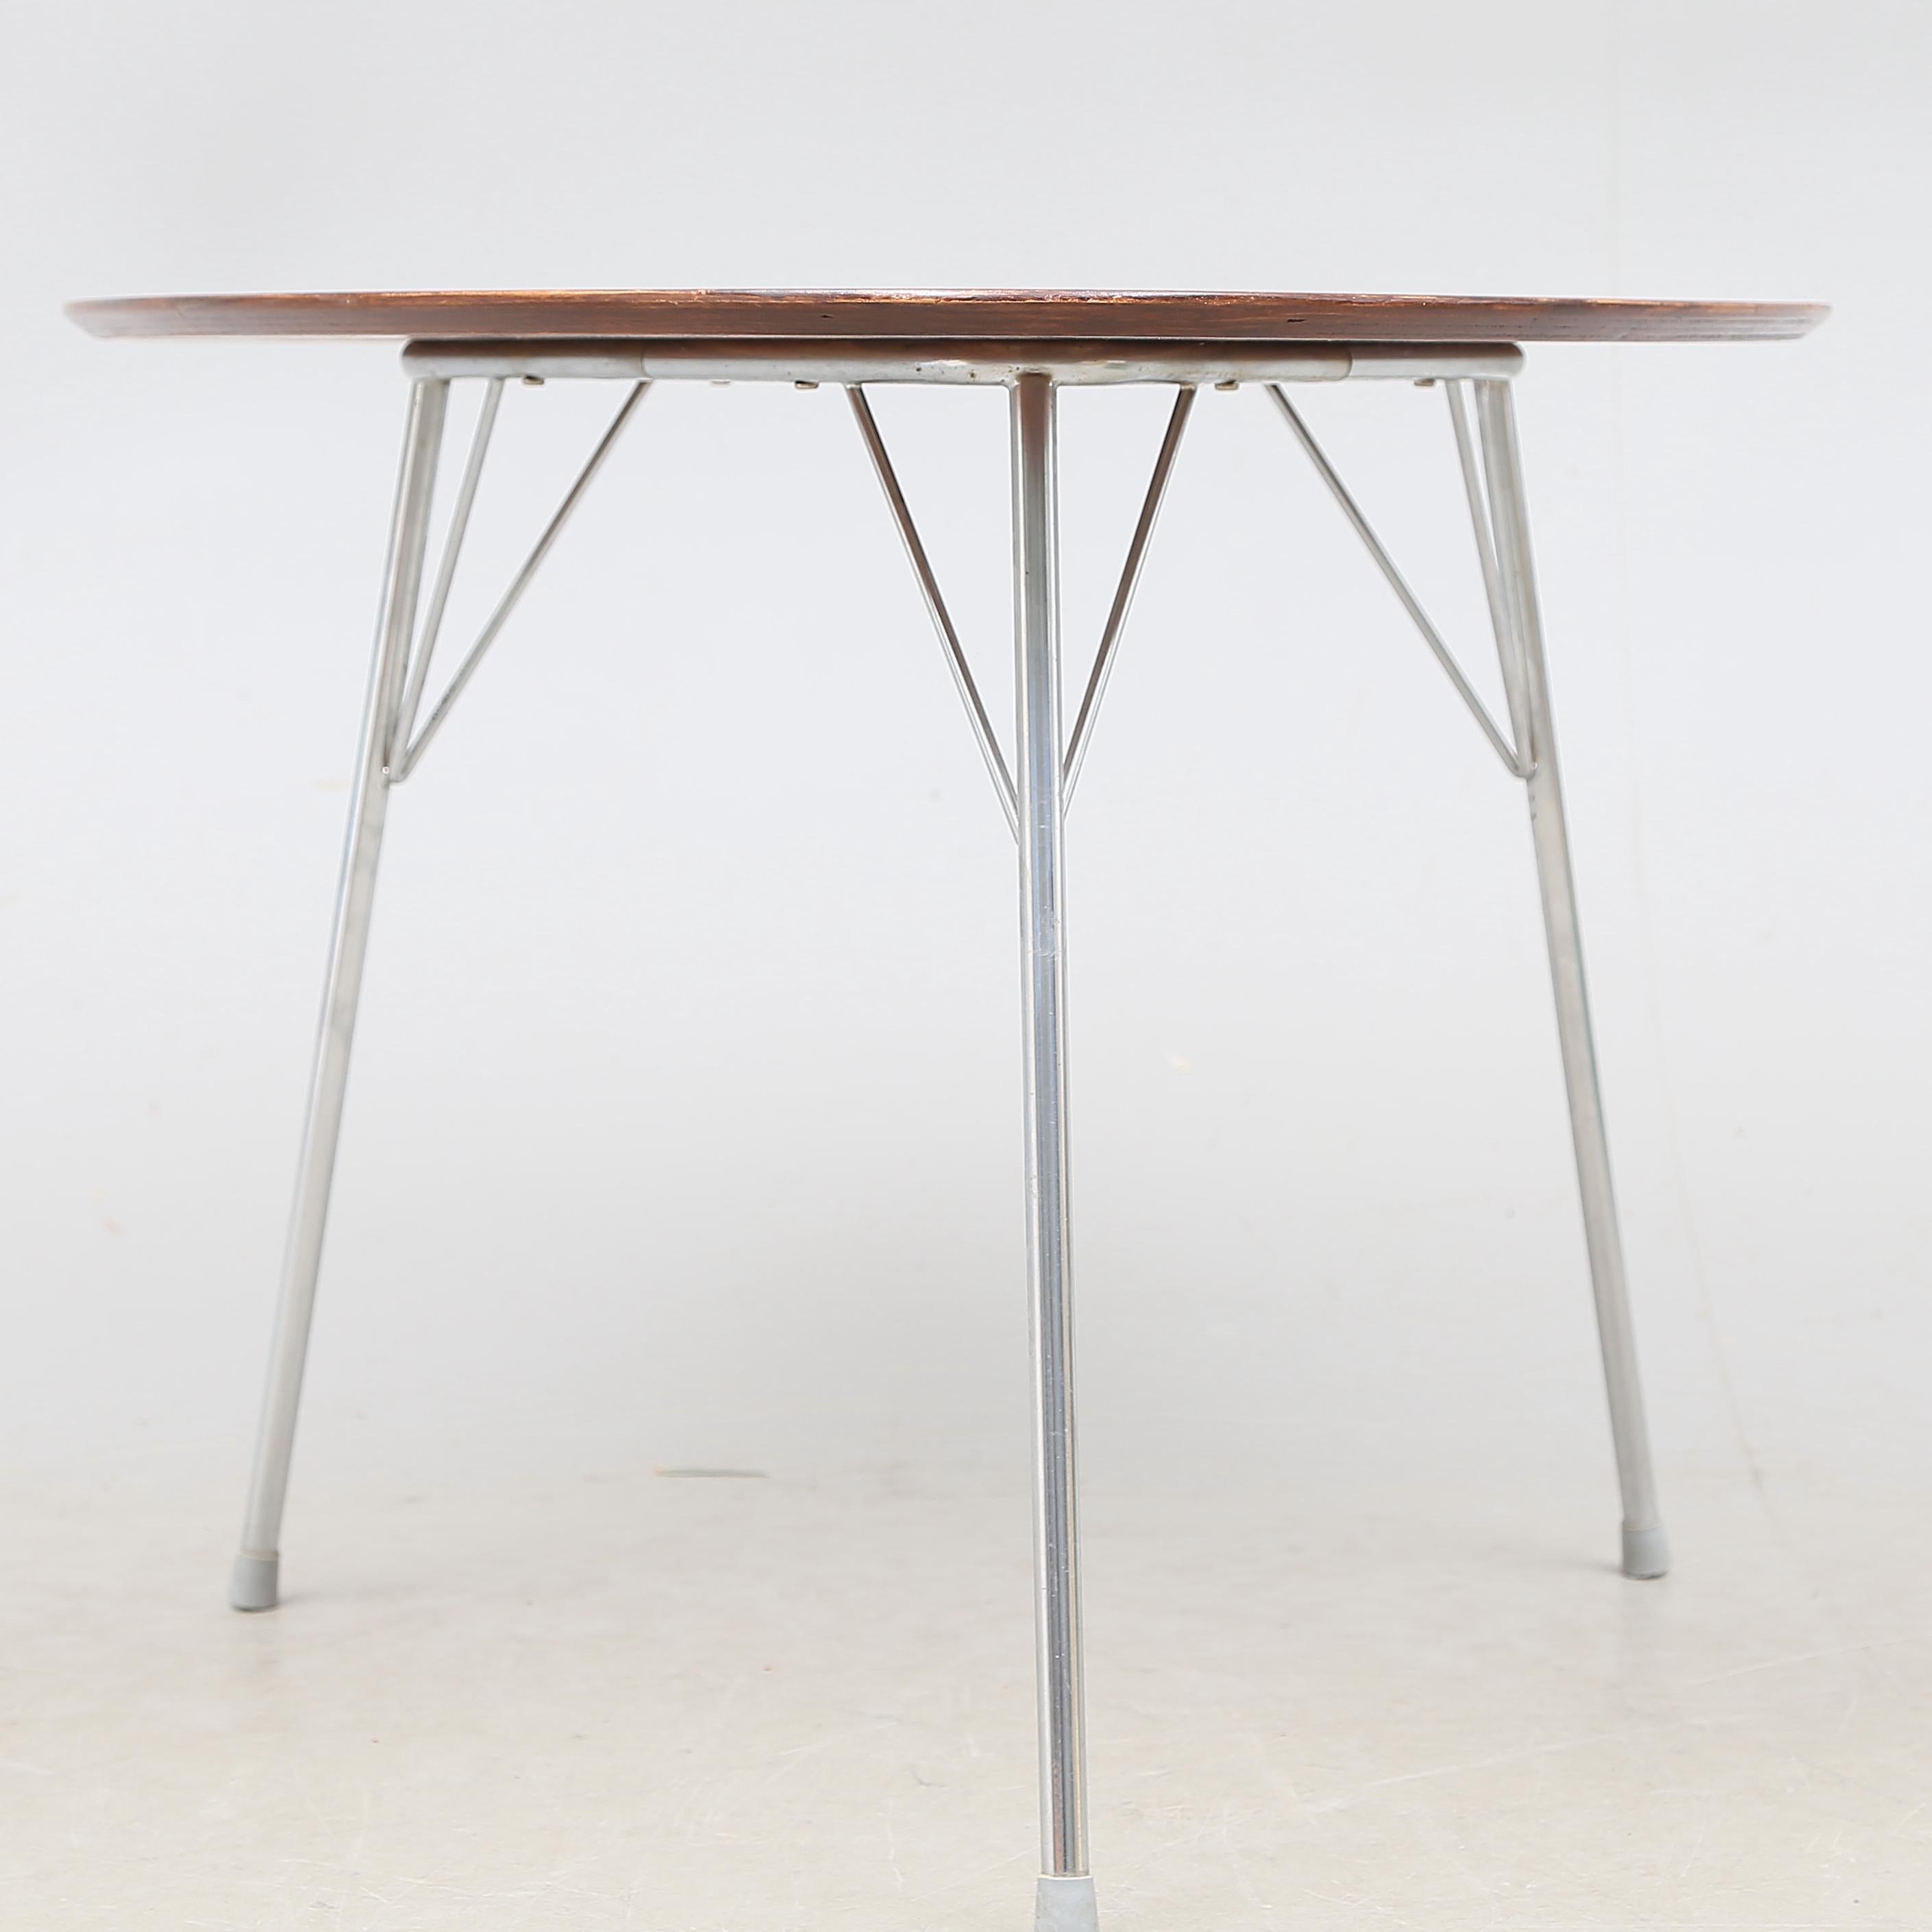 Arne Jacobsen Egg Table, modèle 3606, Table d'appoint conçue en 1952. Il s'agit d'une version plus petite de la table Egg, plus grande, conçue par Arne Jacobsen pour compléter sa 